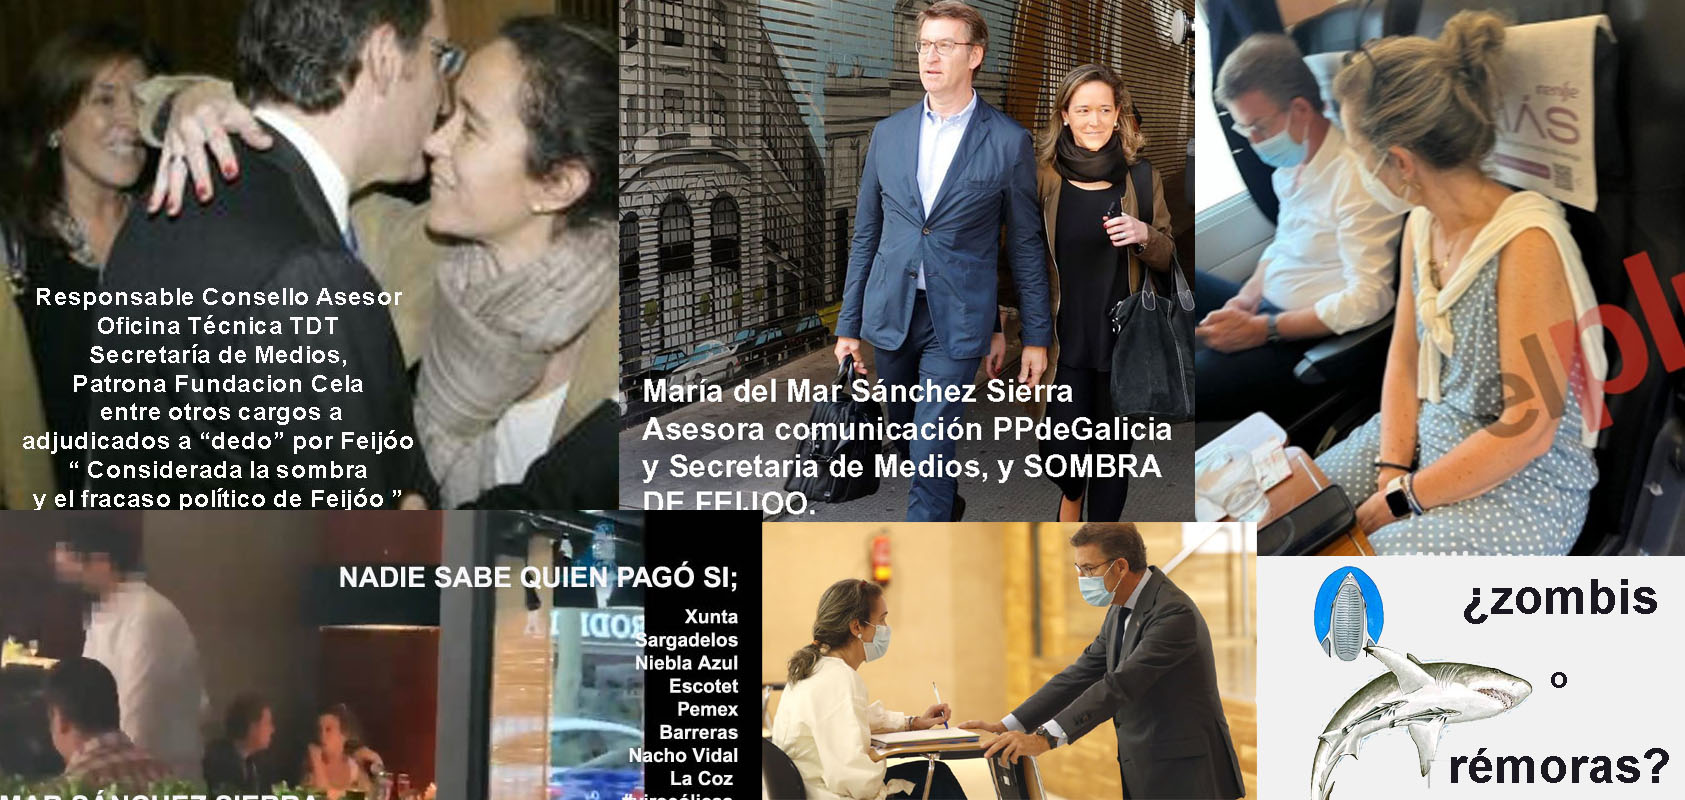 Xornal Galicia - Pladesemapesga afirma que el PP-Feijóo está literalmente  dominado por el miedo y terror a María del Mar Sánchez Sierra.